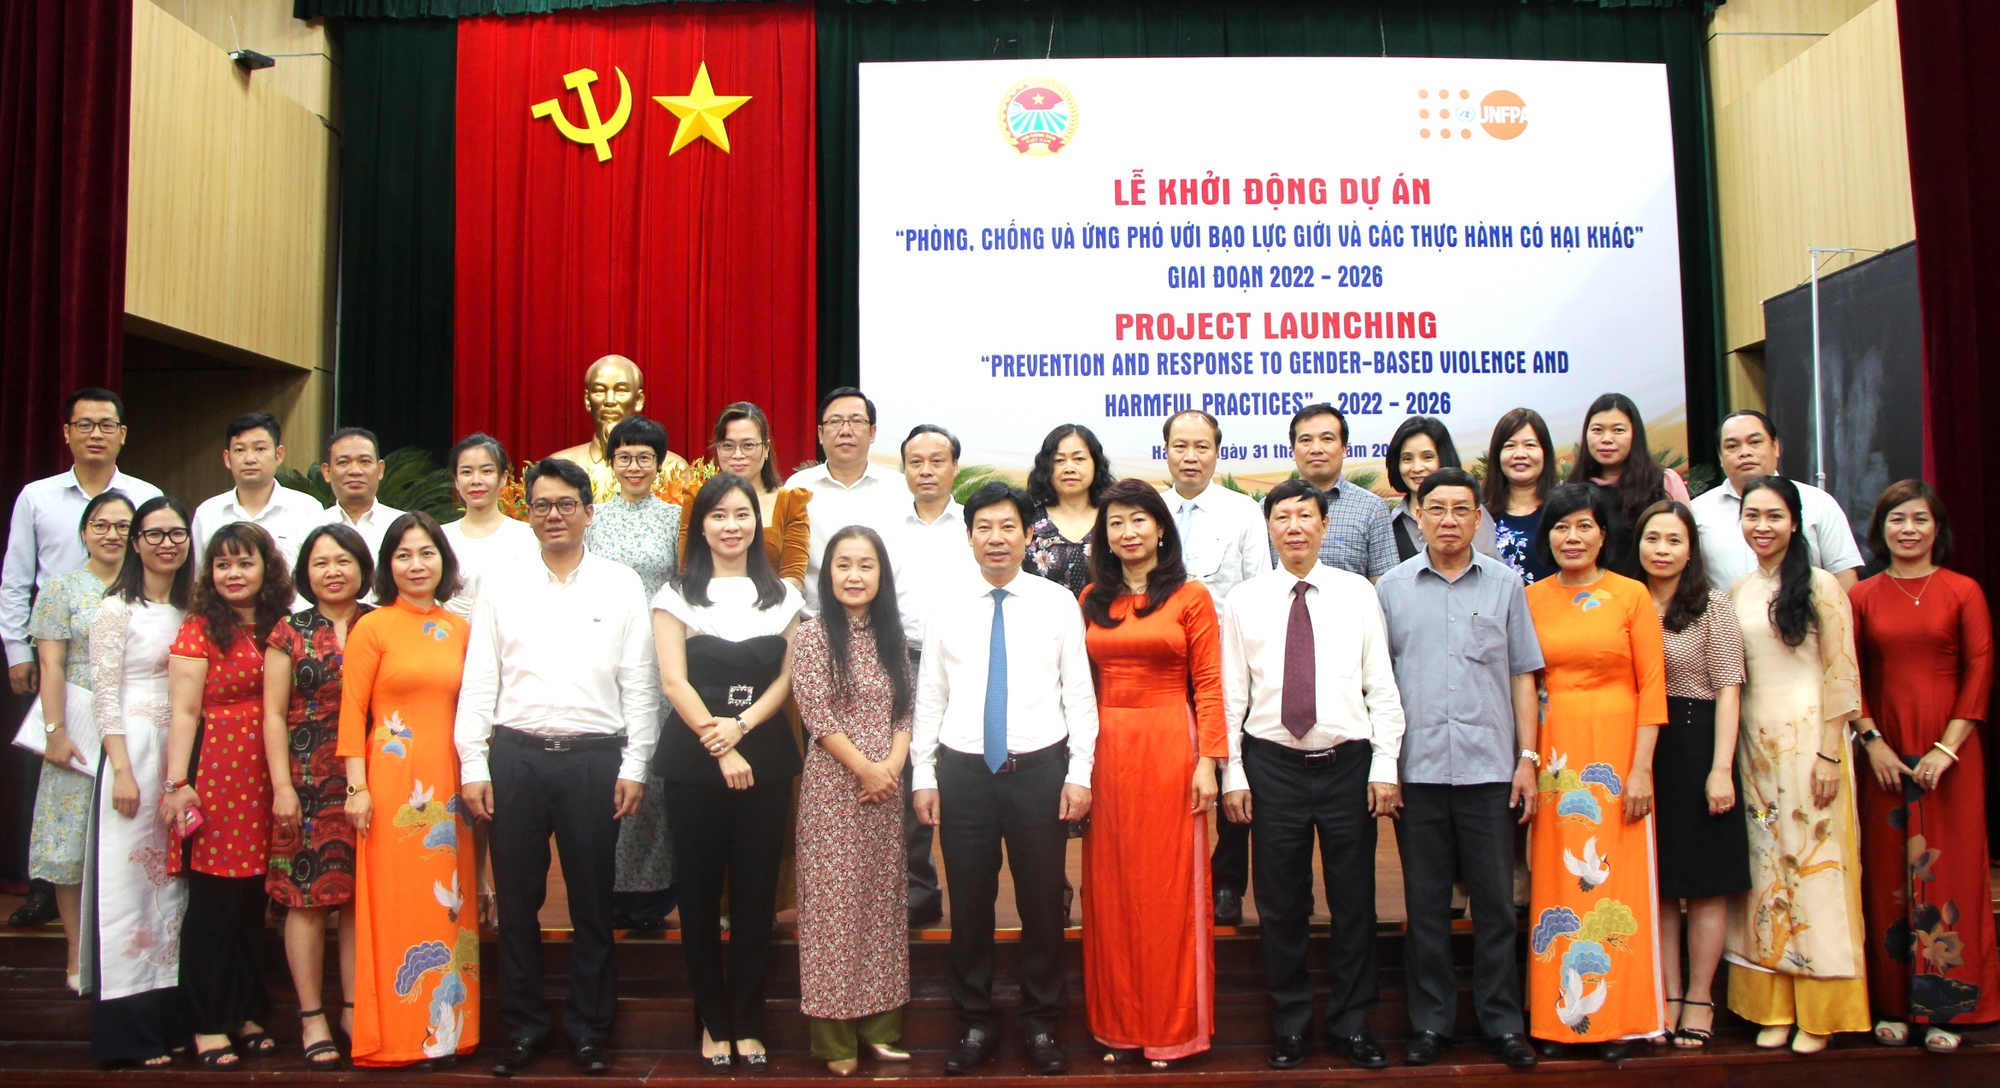 Hội Nông dân Việt Nam và Quỹ Dân số Liên Hợp Quốc: Khởi động Dự án phòng chống và ứng phó với bạo lực giới - Ảnh 5.